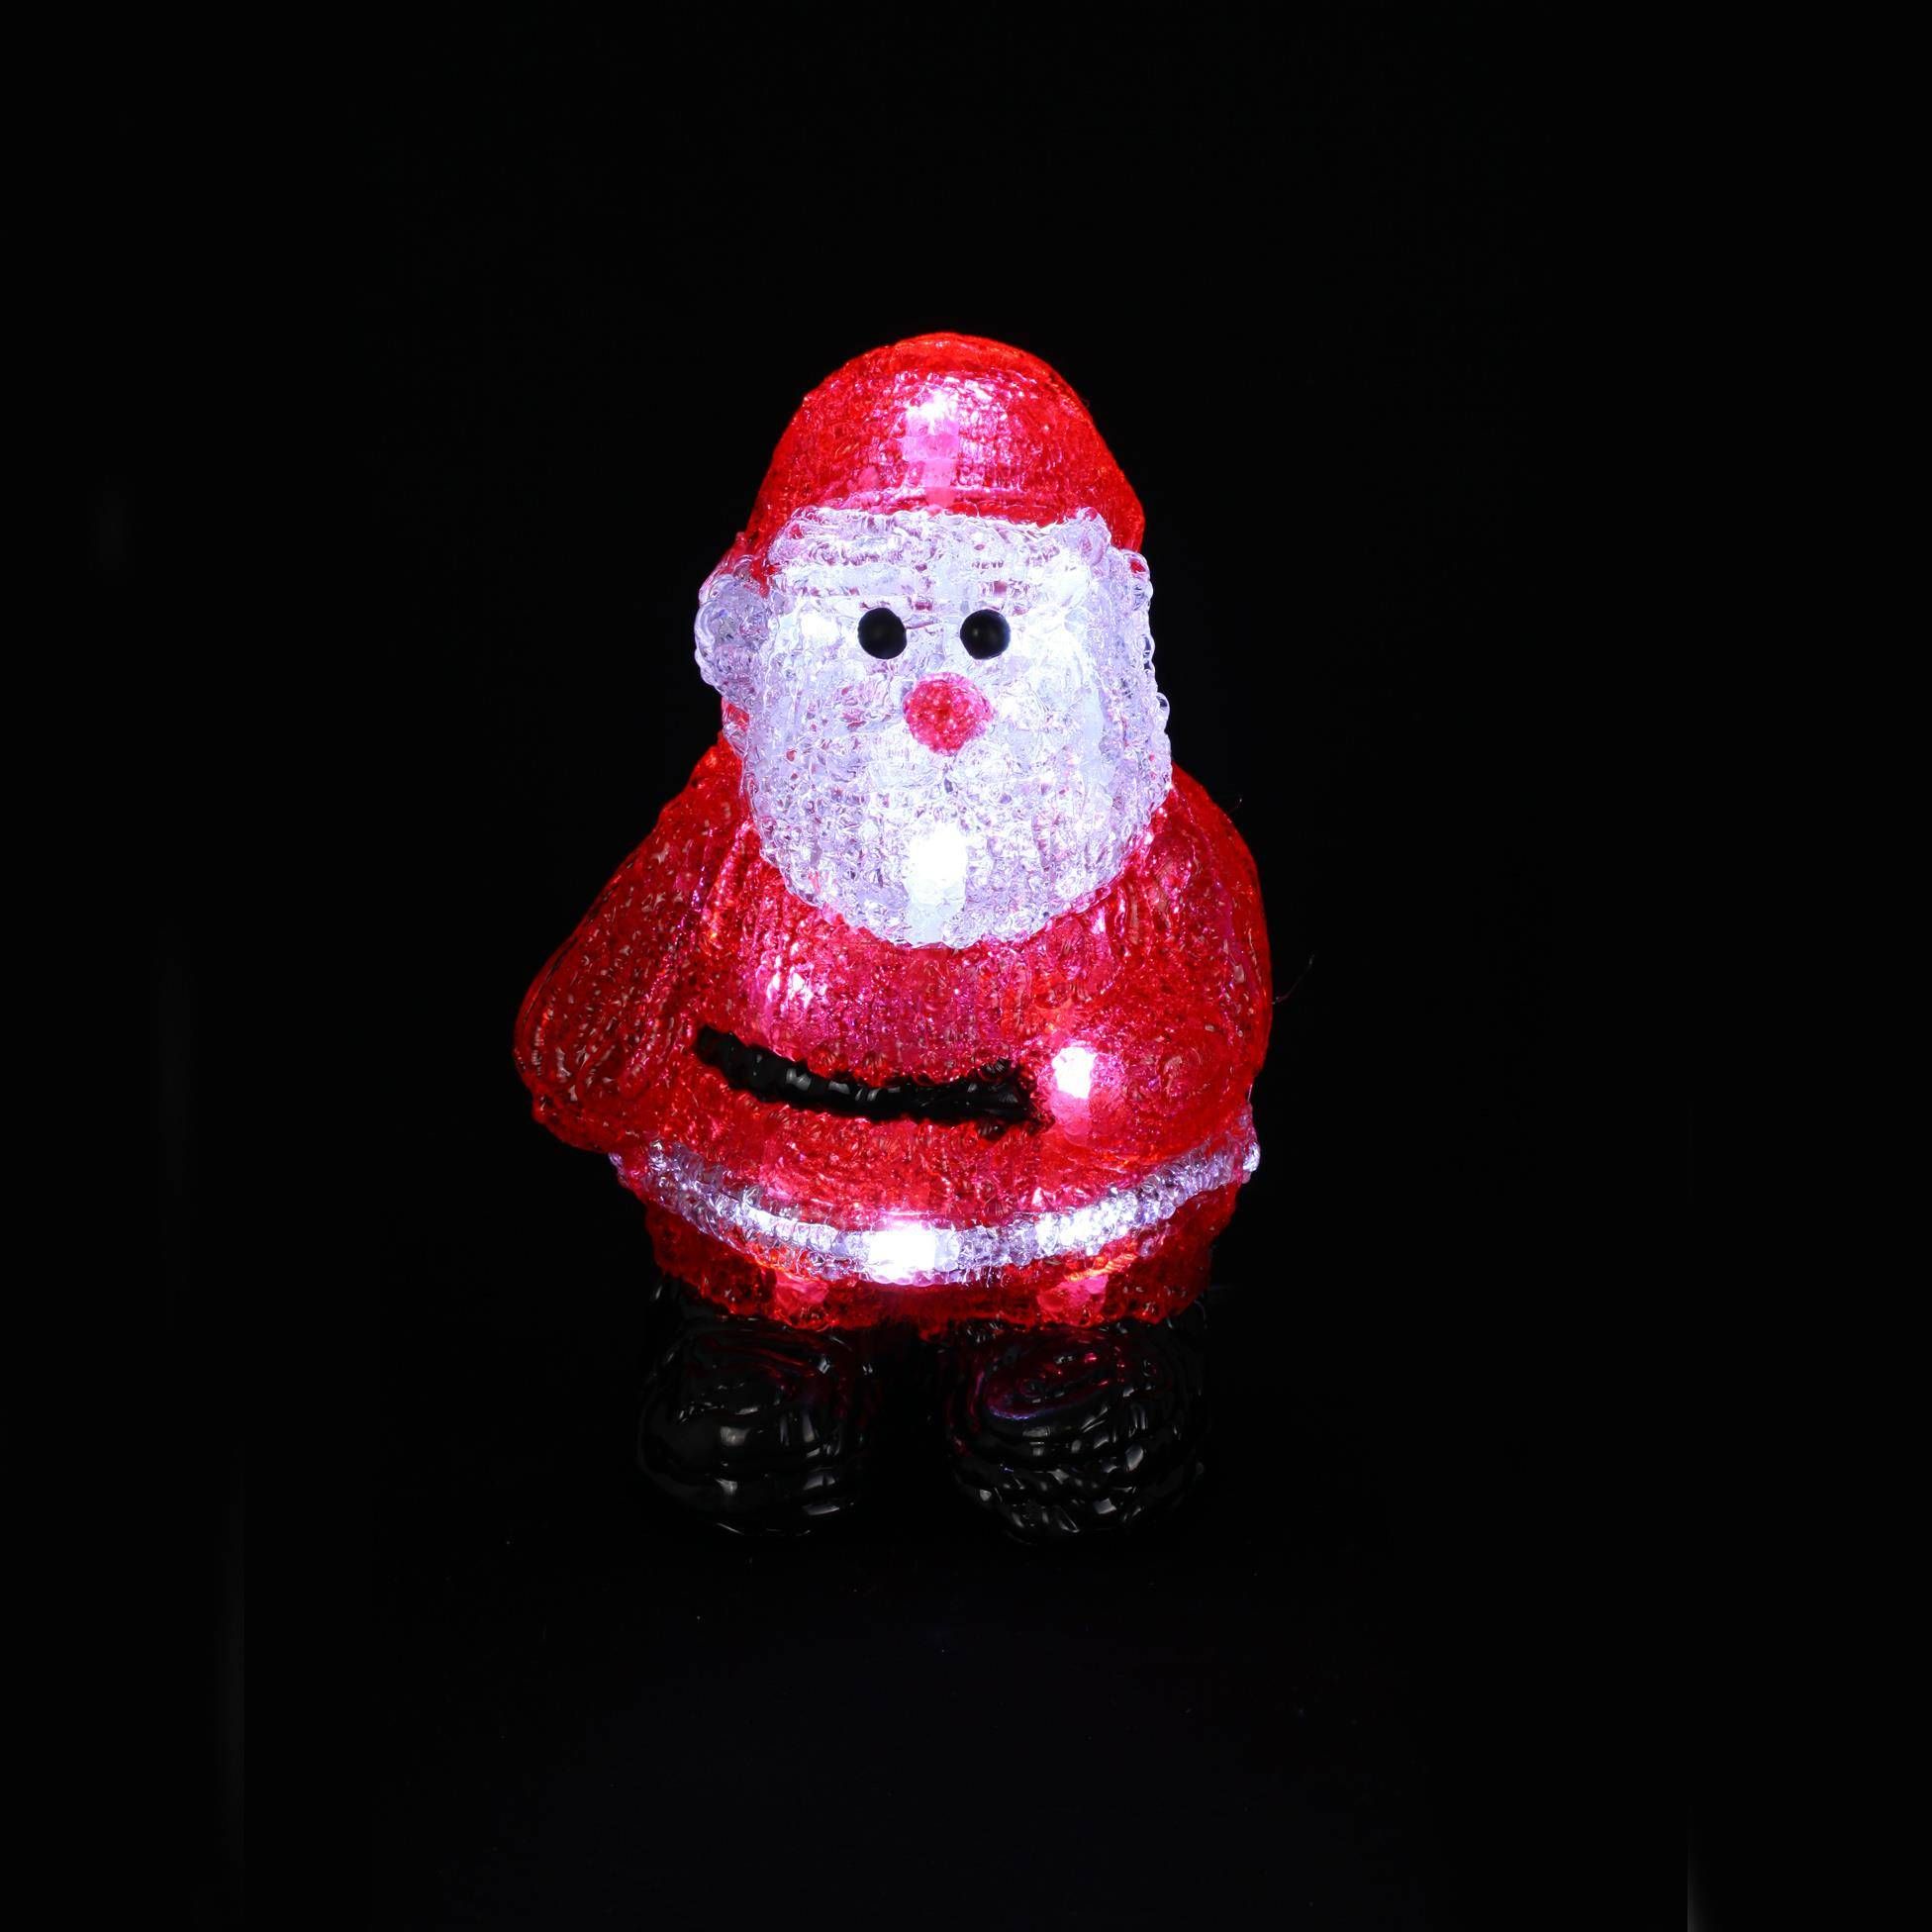 Autour de Minuit Vnitřní vánoční osvětlení MIKULÁŠ, výška 17 cm - EMAKO.CZ s.r.o.